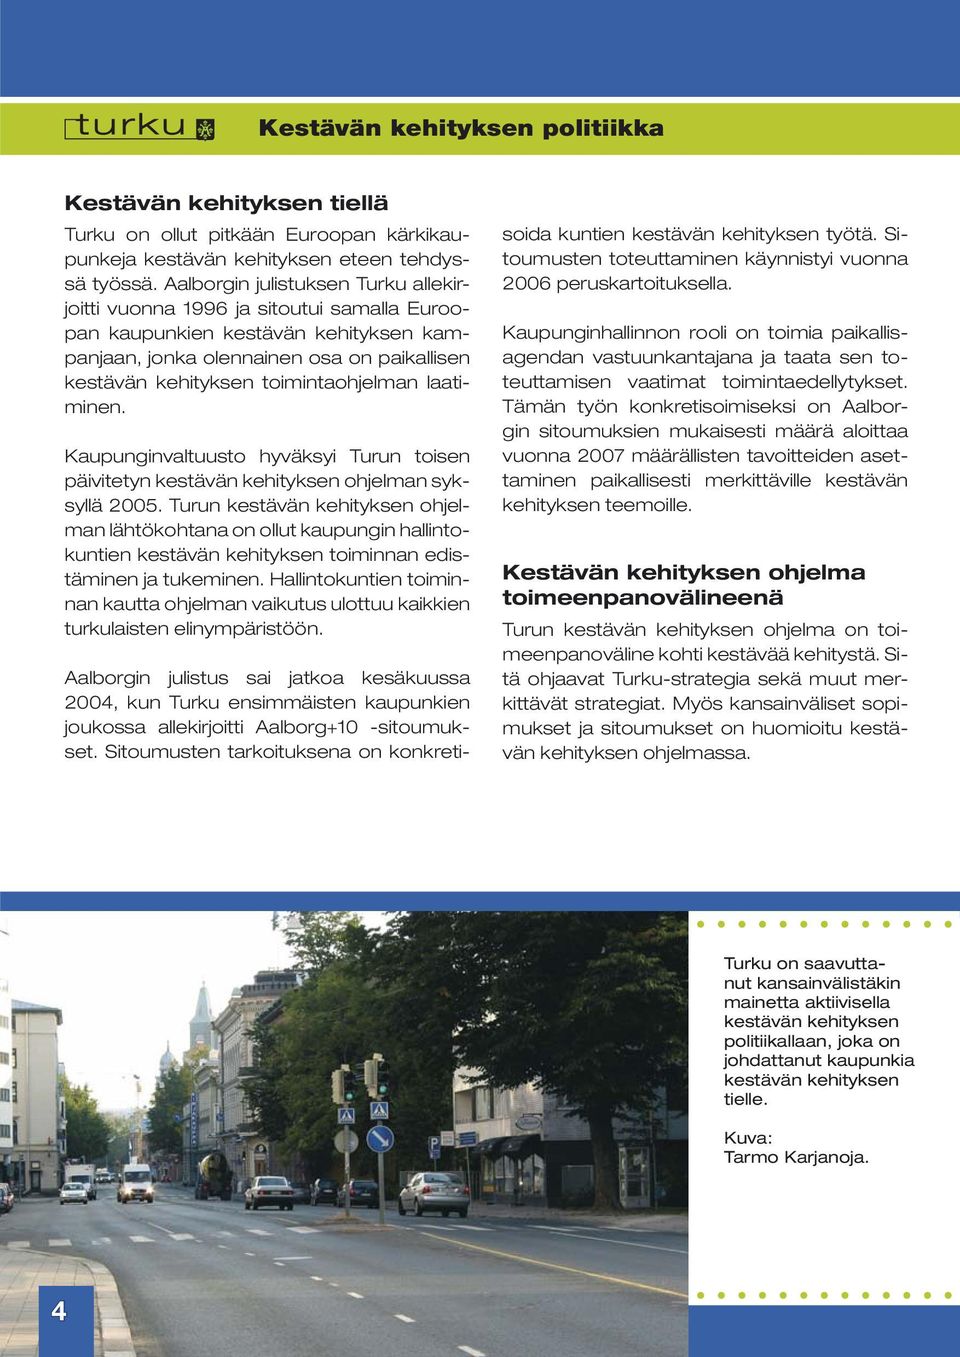 laatiminen. Kaupunginvaltuusto hyväksyi Turun toisen päivitetyn kestävän kehityksen ohjelman syksyllä 2005.